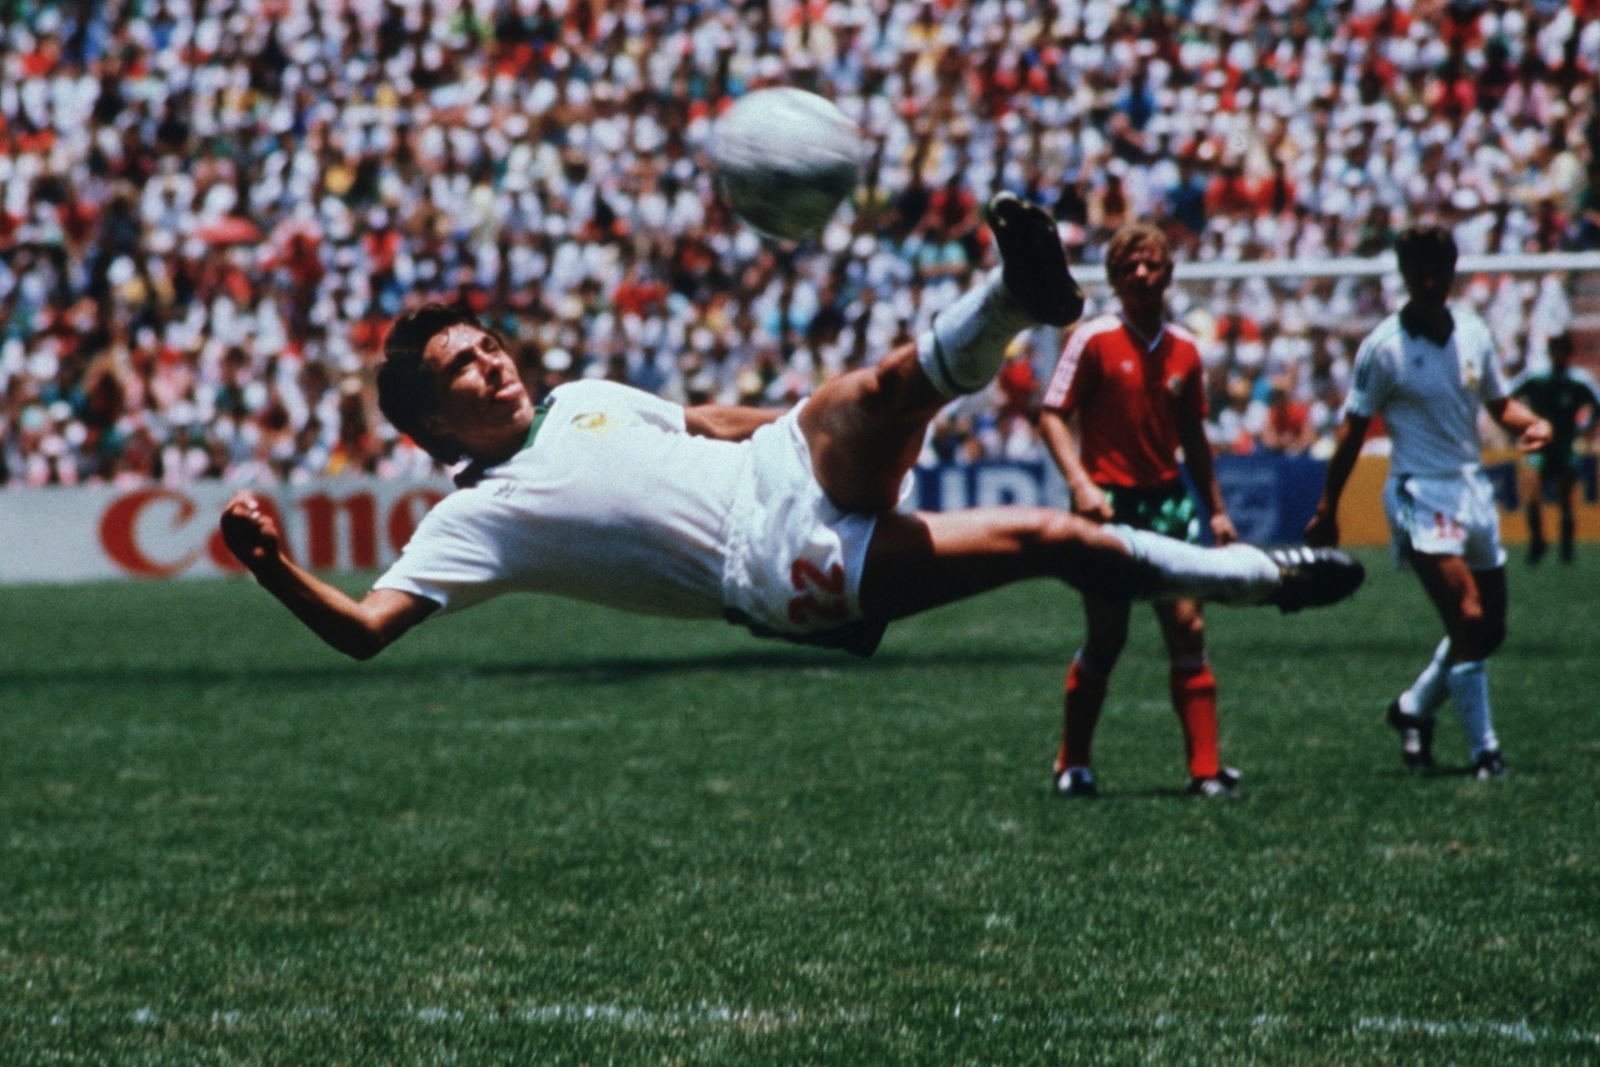 Gol de Manuel Negrete en 1986, considerado el 'Más bonito' de los Mundiales